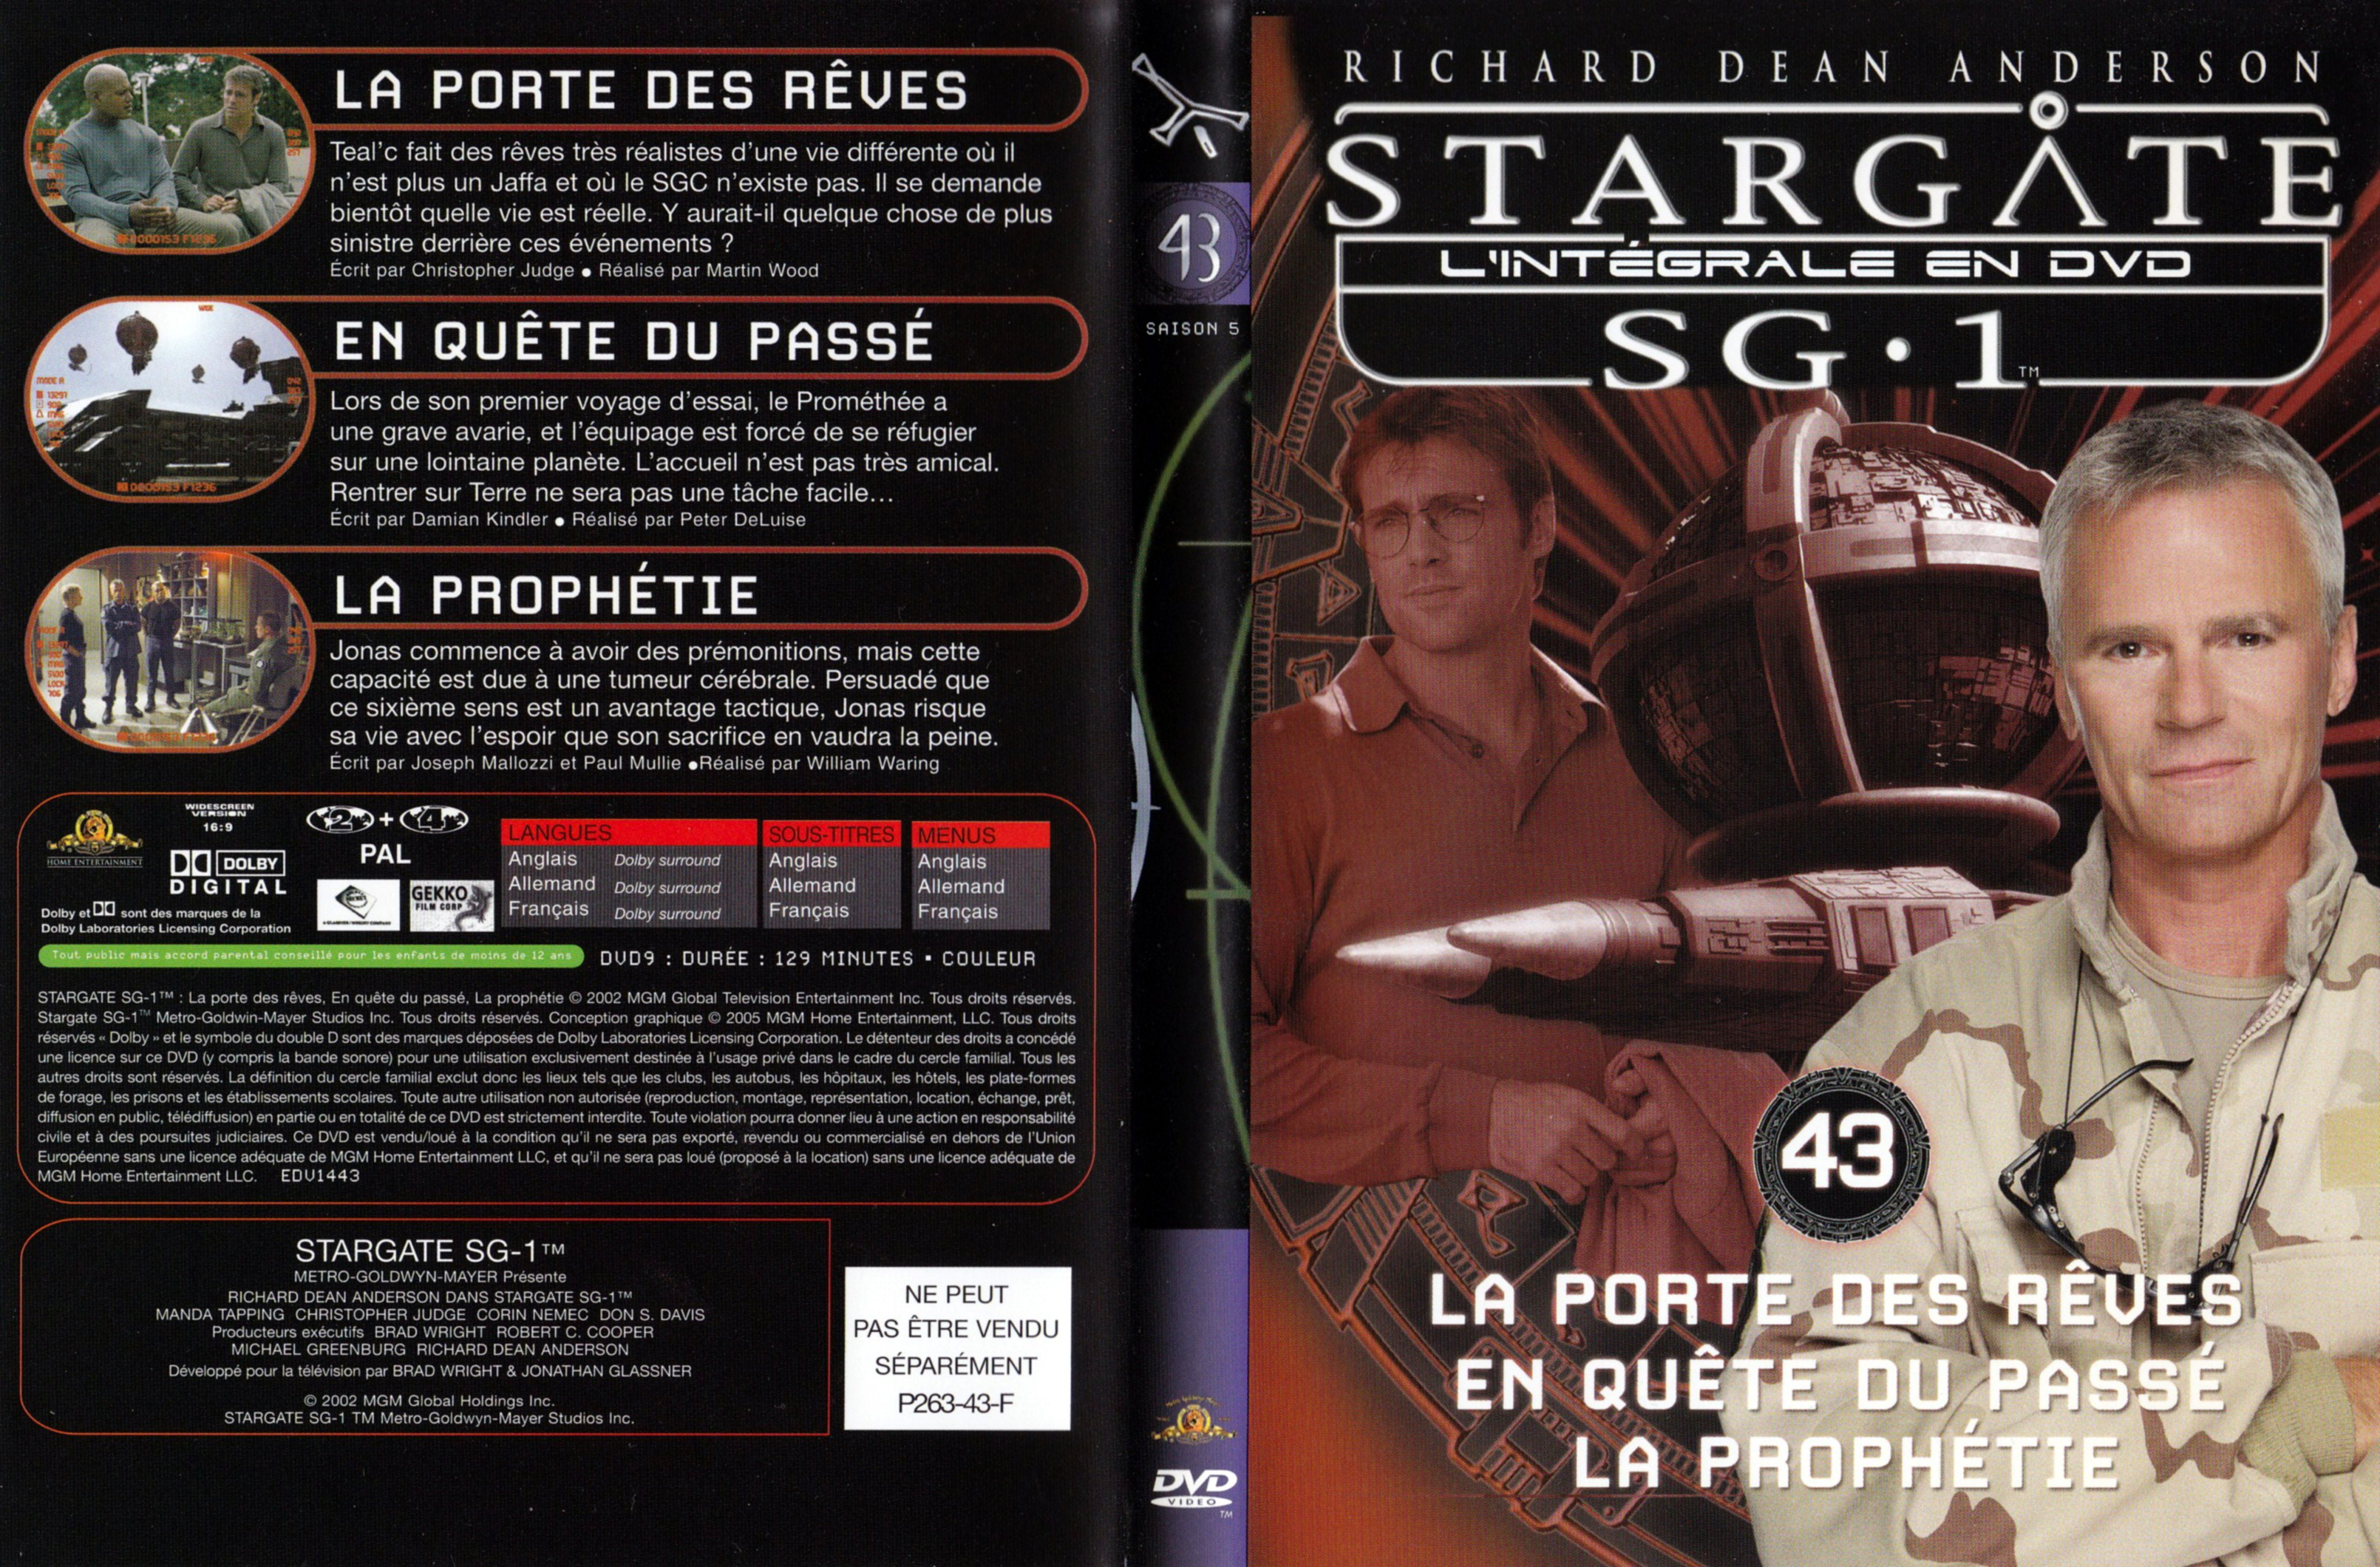 Jaquette DVD Stargate SG1 Intgrale Saison 6 vol 43